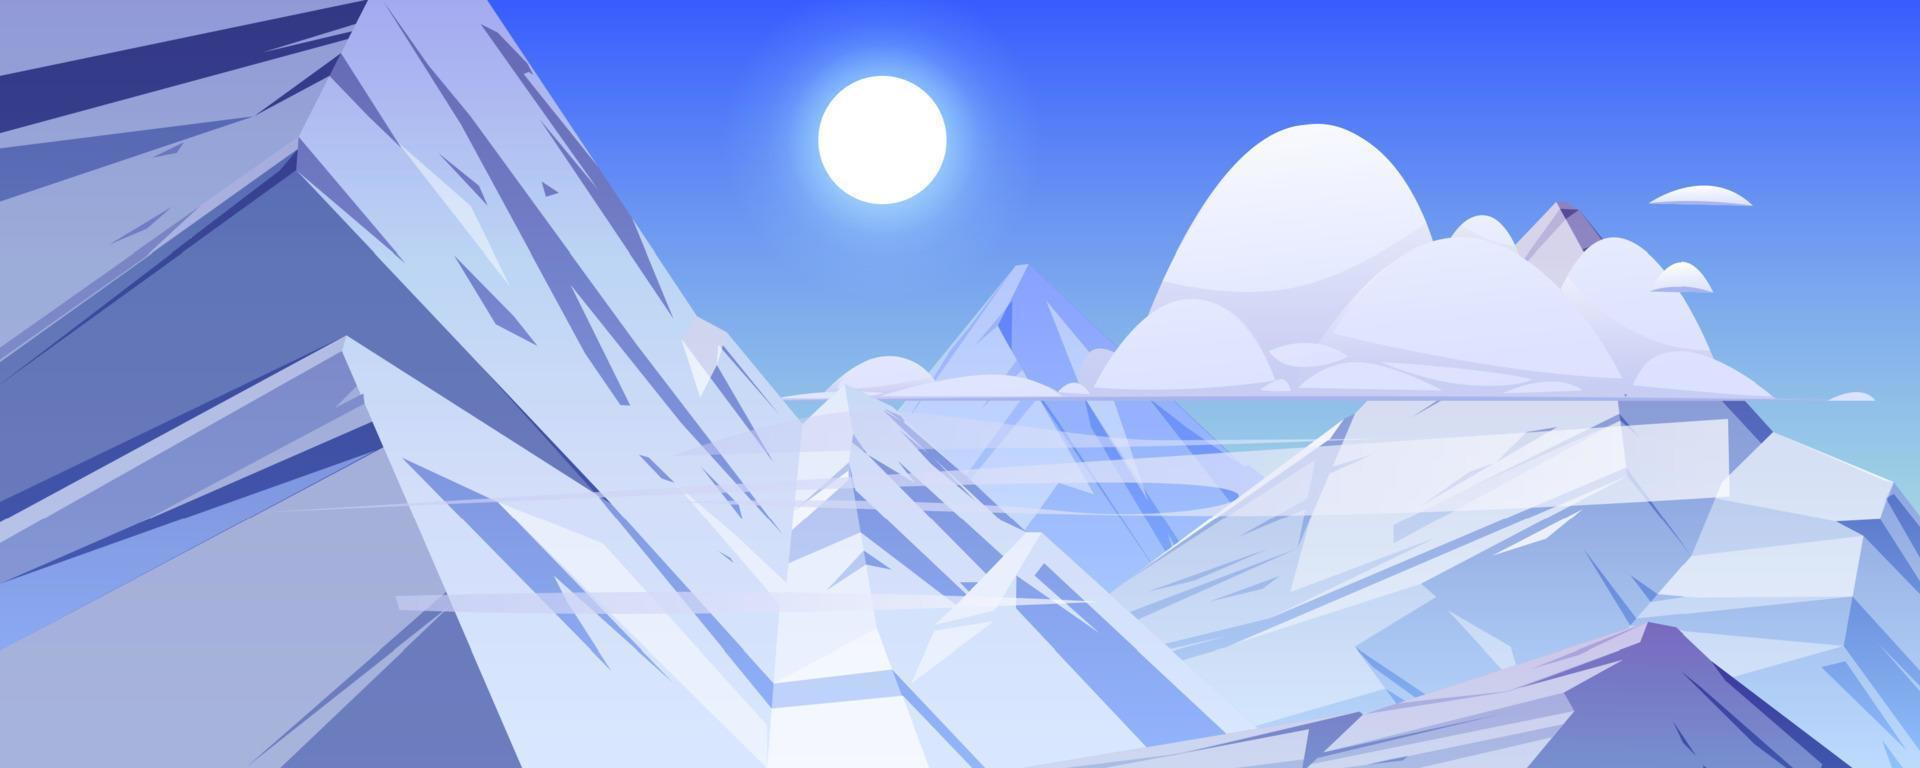 paysage de montagnes avec des rochers et des pics de glace vecteur